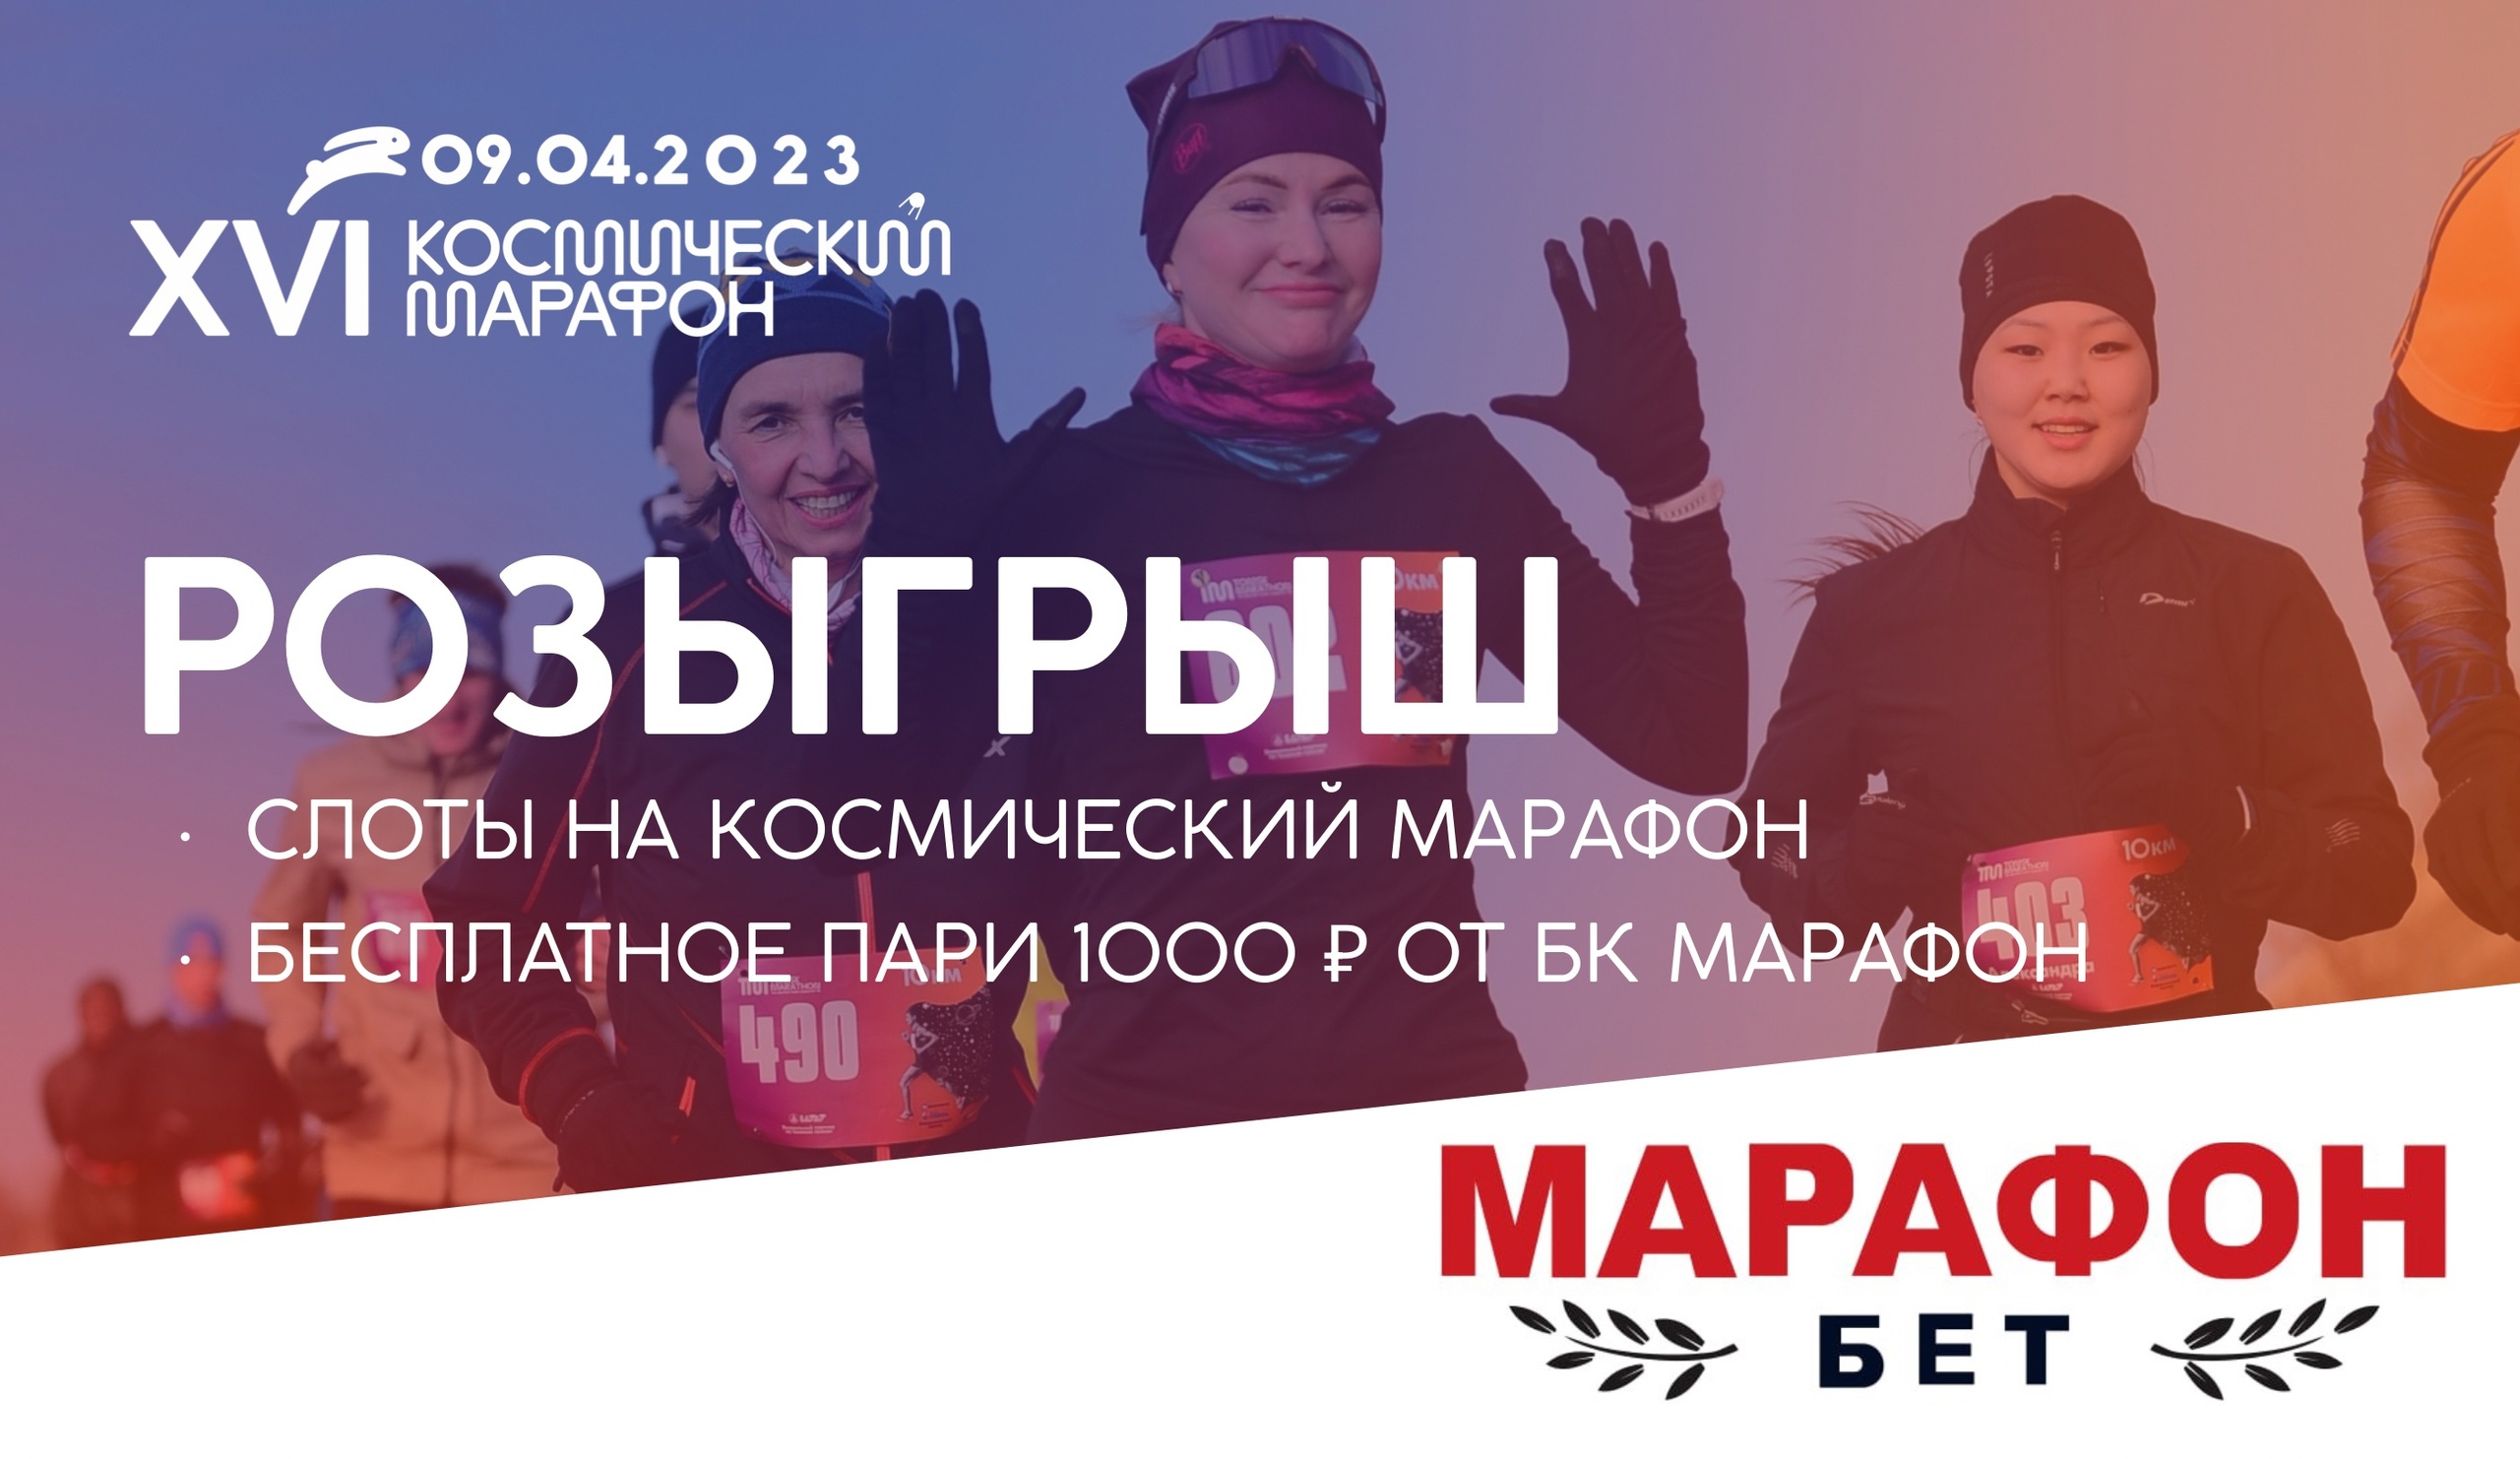 XVI Космический марафон. Участвуй в легендарном событии и получай призы от БК "Марафон"